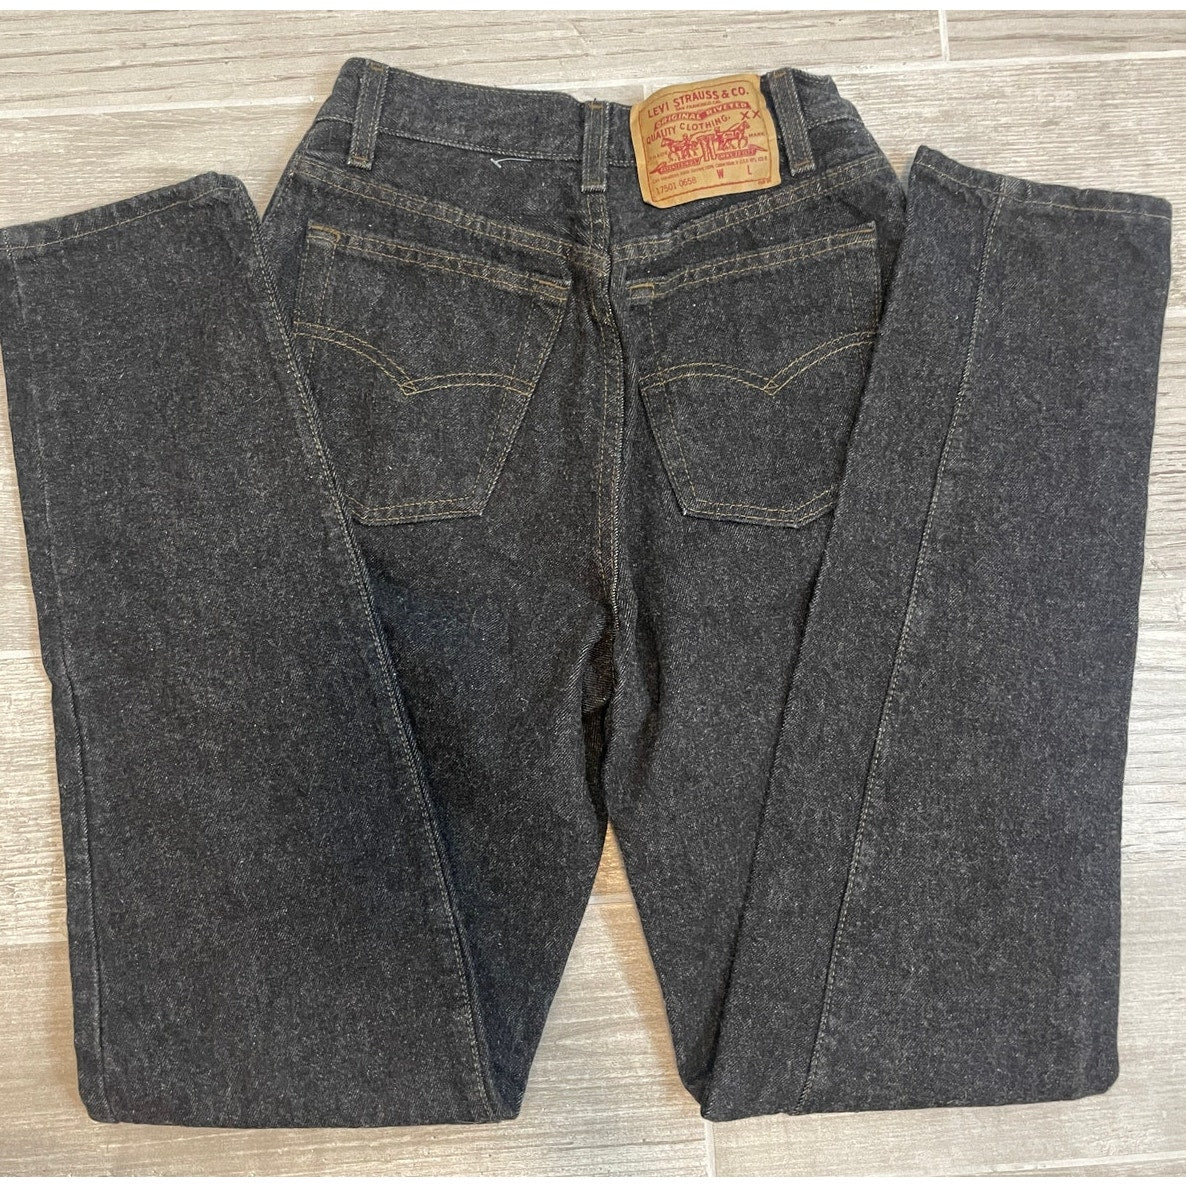 Vintage 501 Levi's Jeans